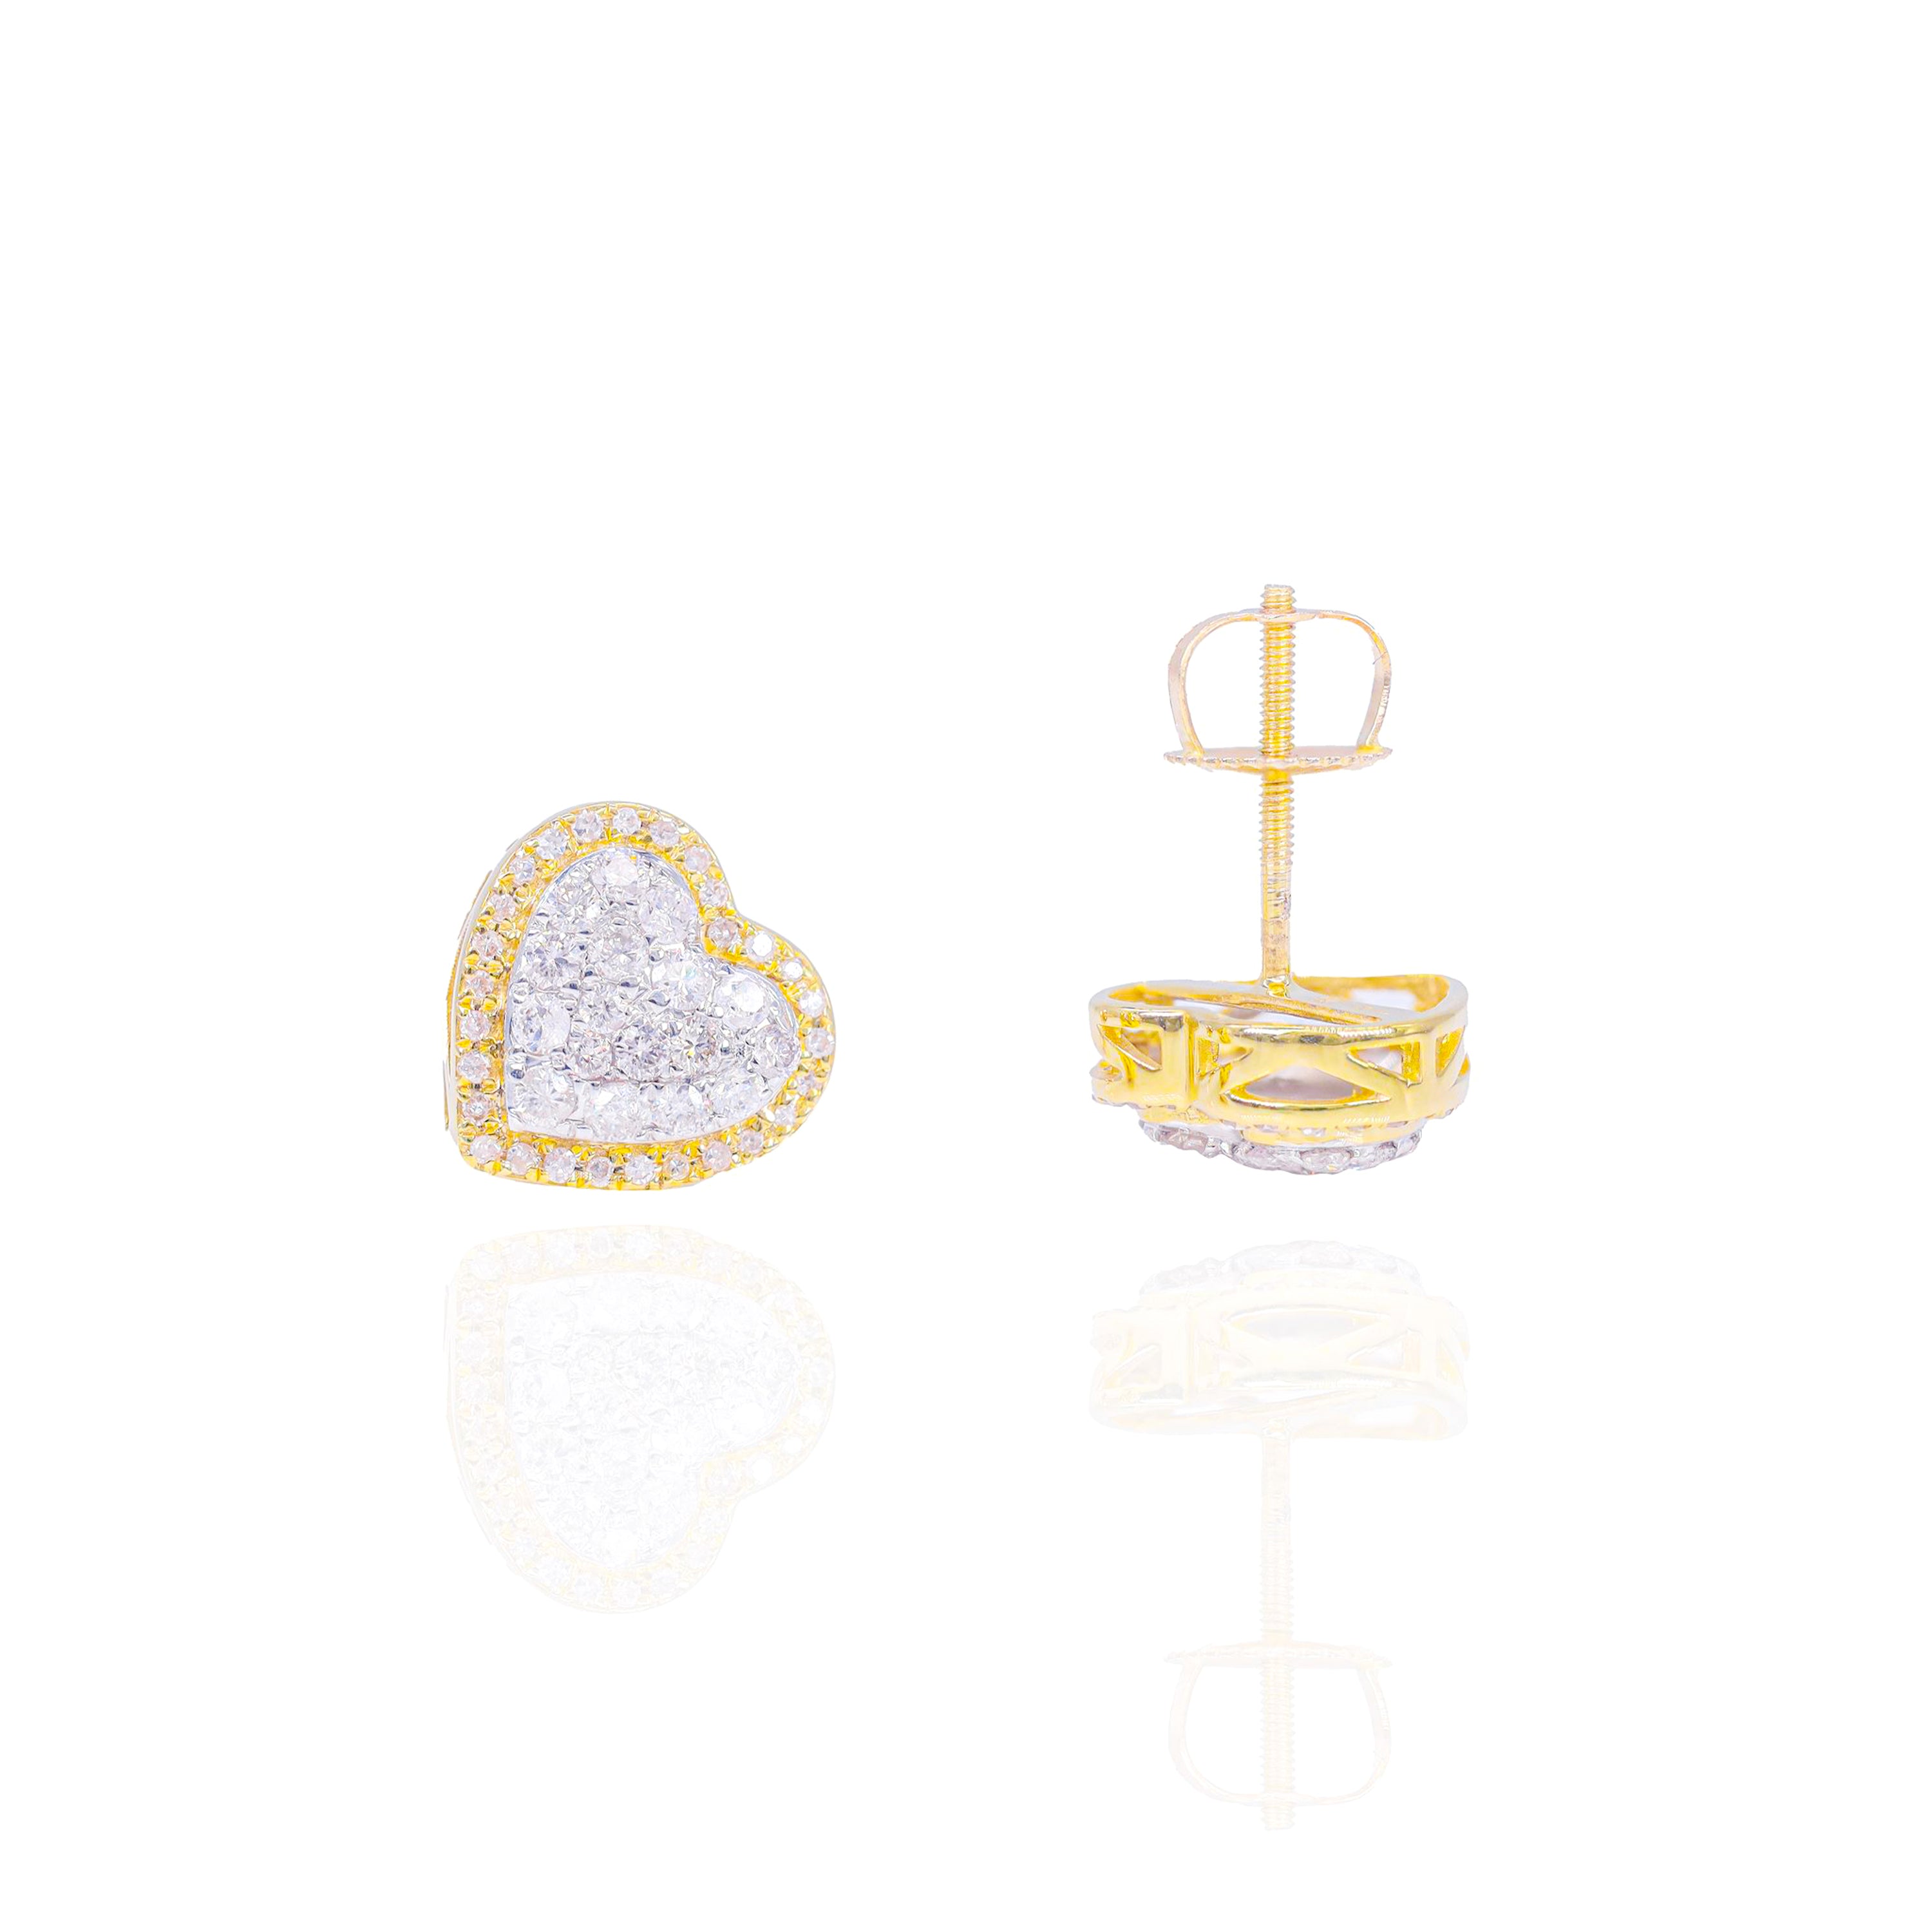 Two-Tone Heart Cluster Diamond Earrings